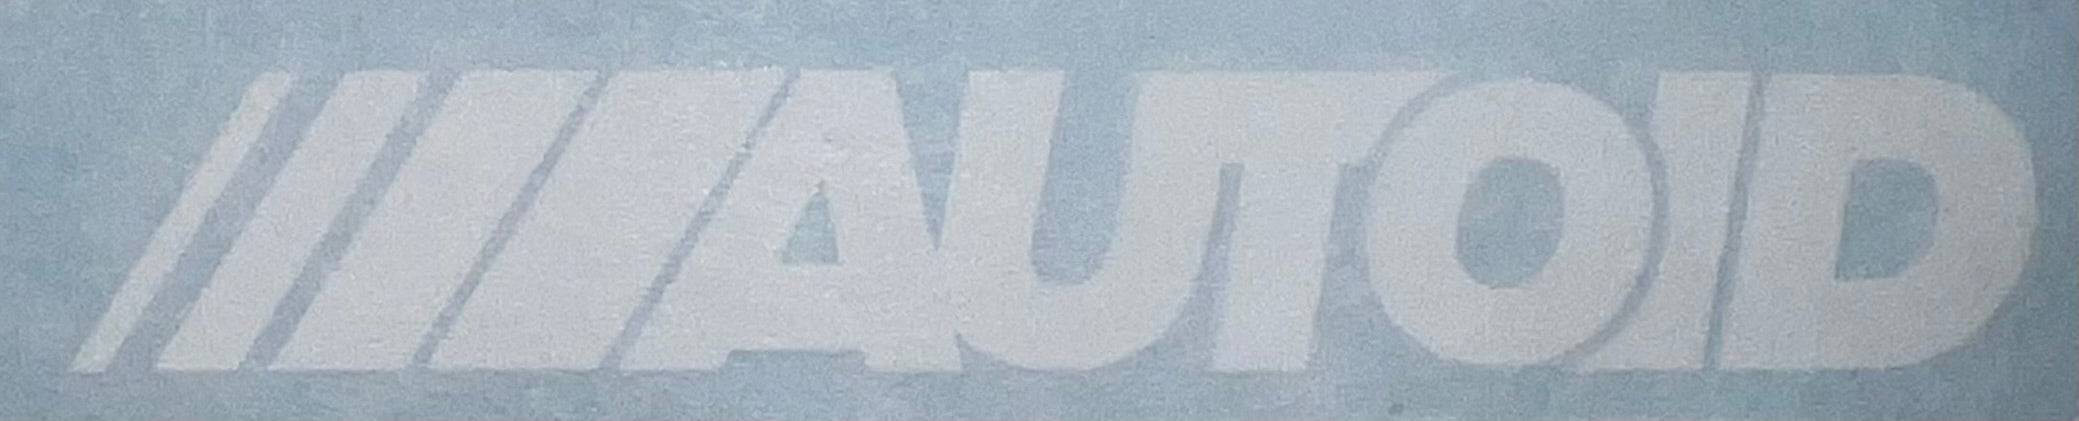 AUTOID Logo Sticker Decal, Vinyl Decals & Stickers, AUTOID - AUTOID | Premium Automotive Accessories